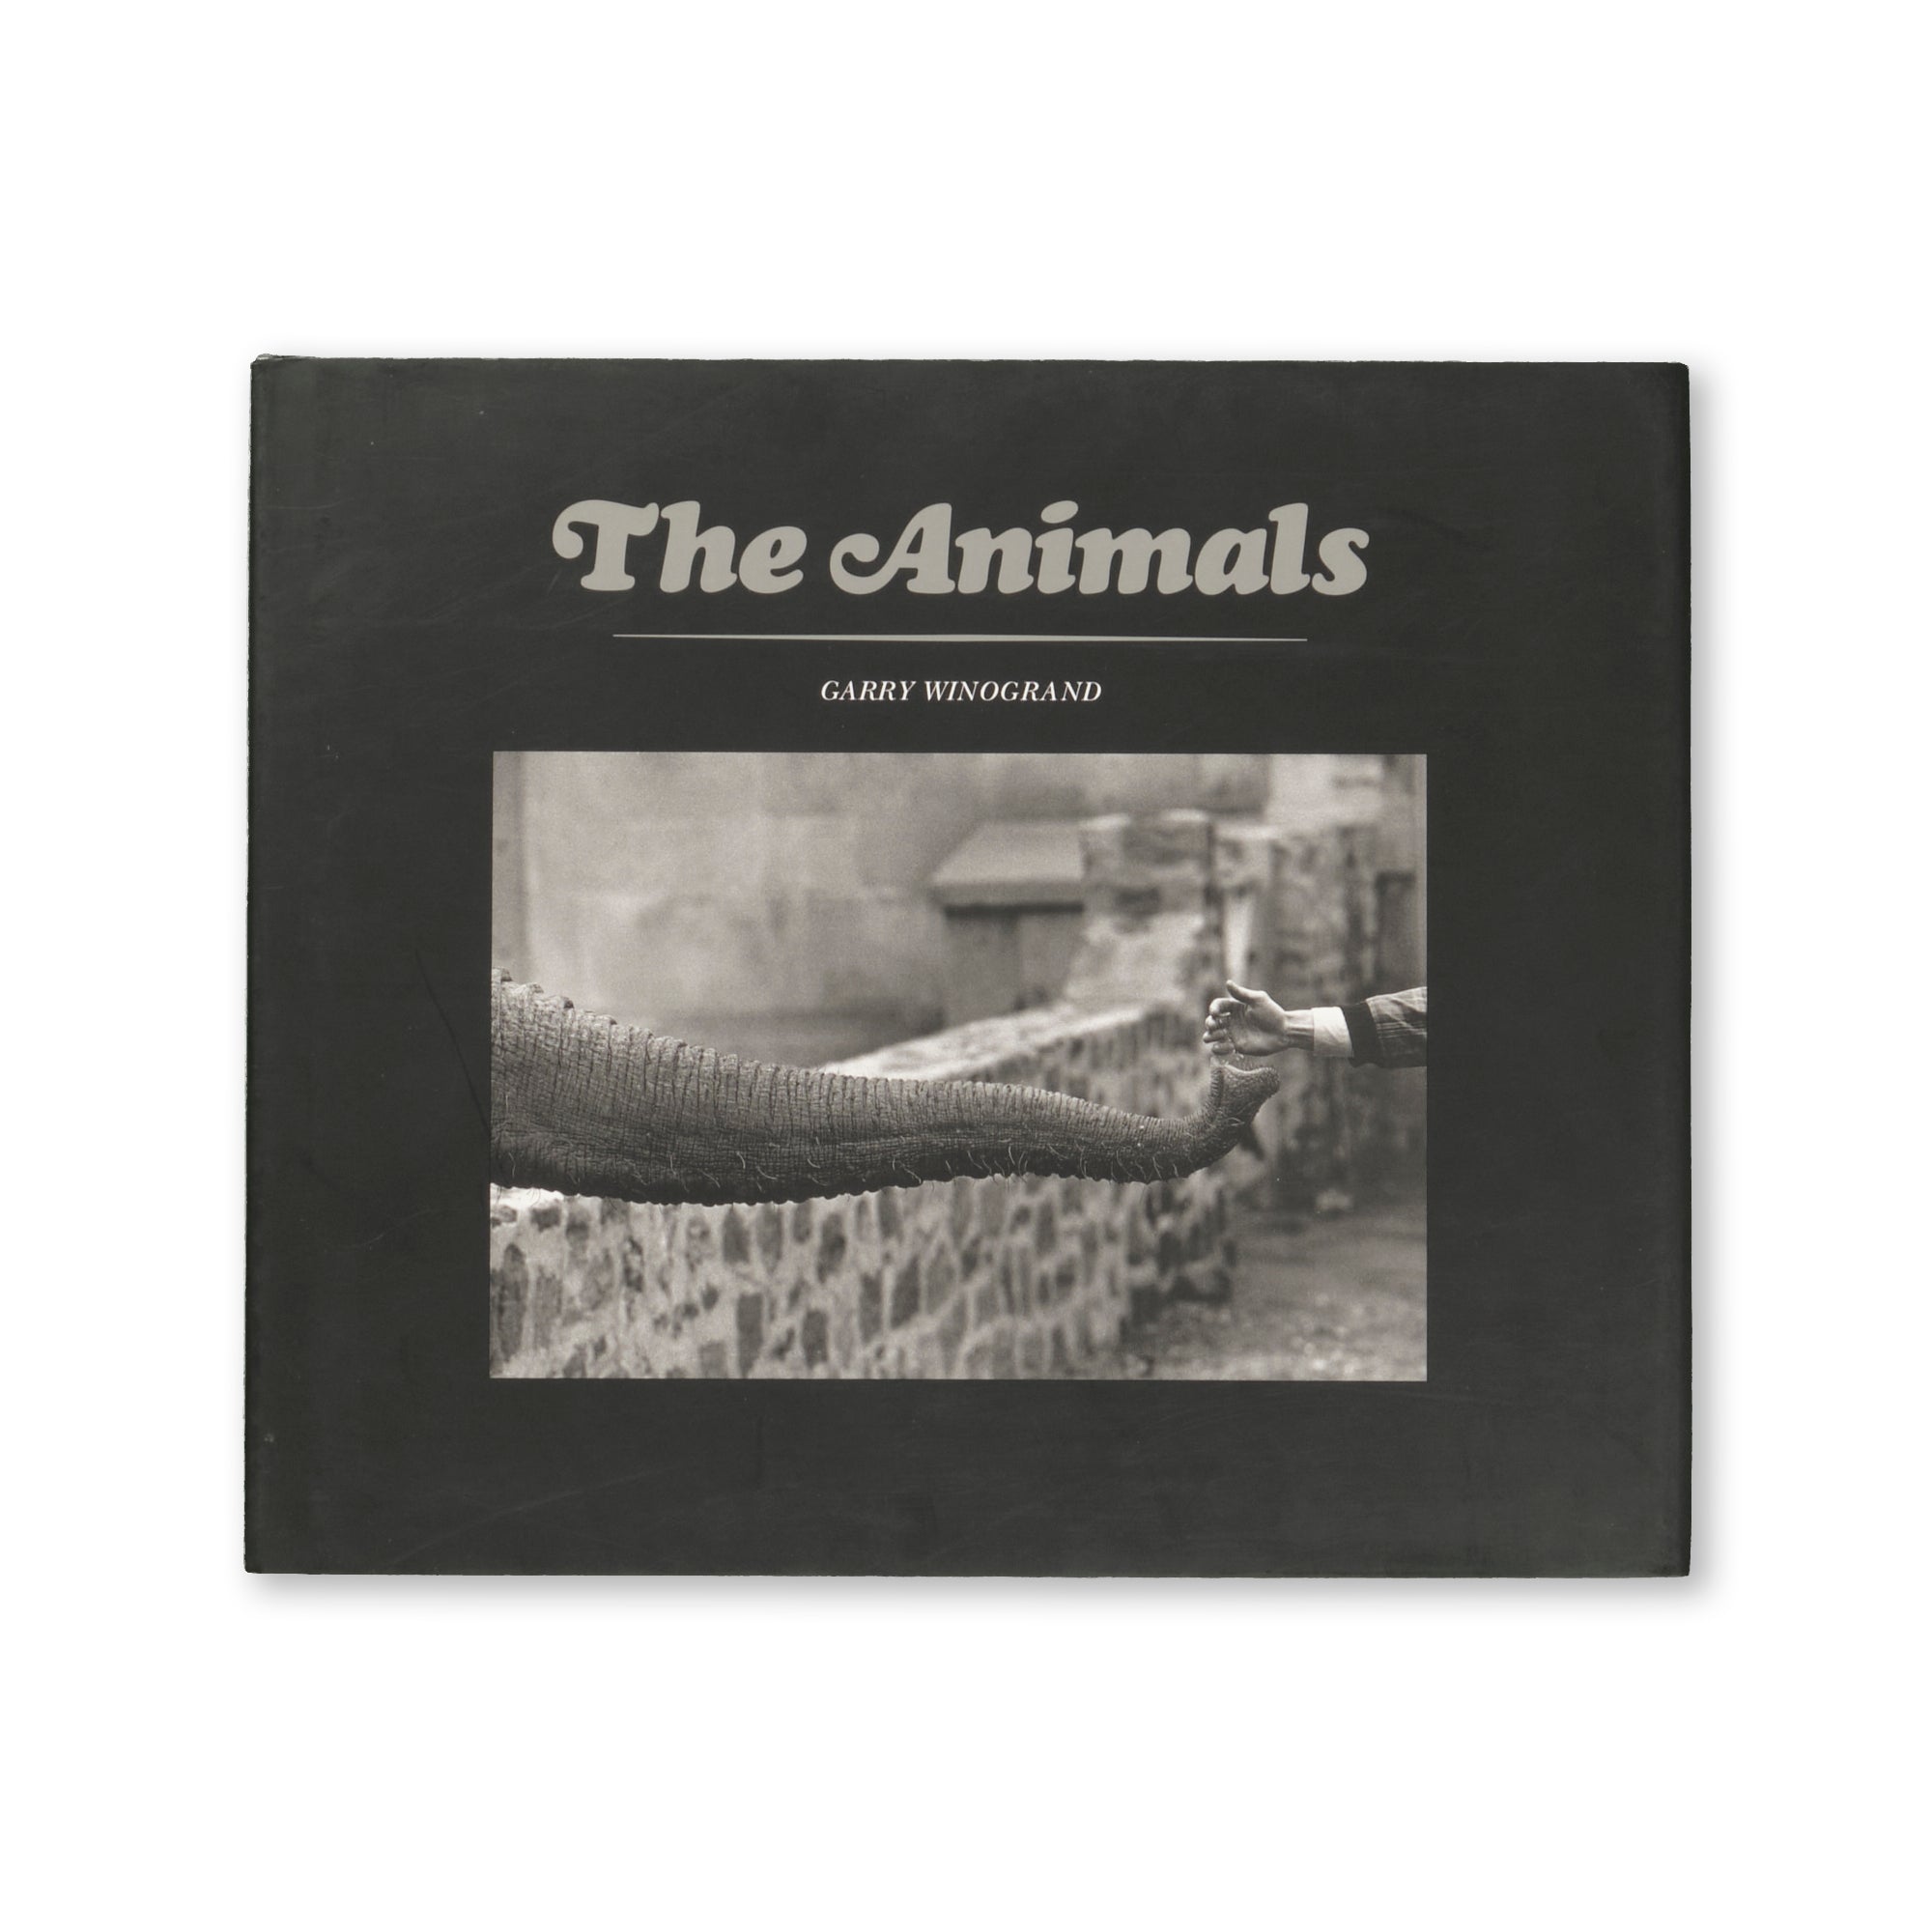 Garry Winogrand - The Animals